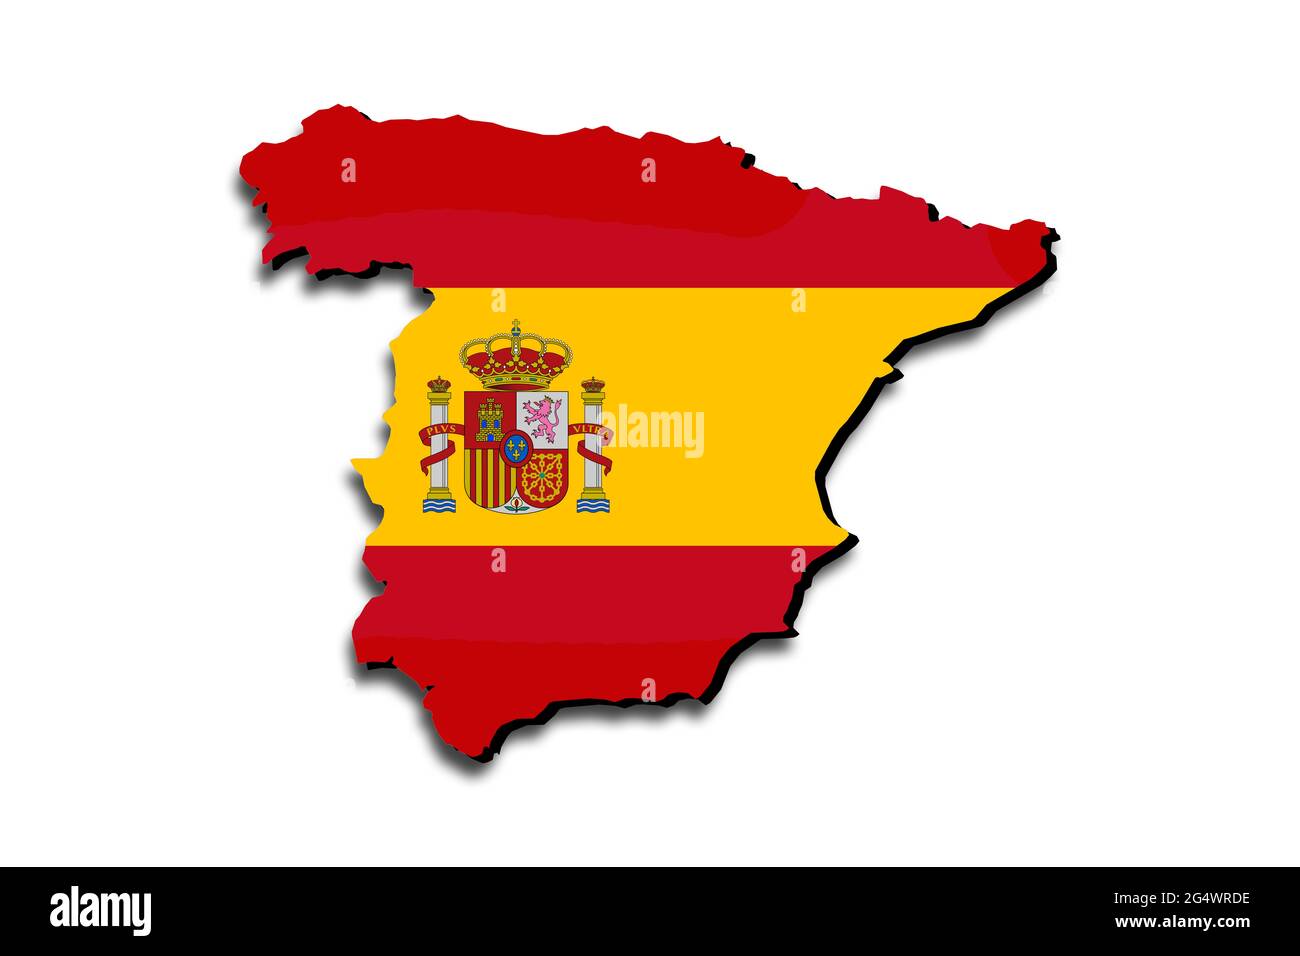 Carte de l'Espagne avec le drapeau national superposé sur le pays. Graphiques 3D projetant une ombre sur l'arrière-plan blanc Banque D'Images